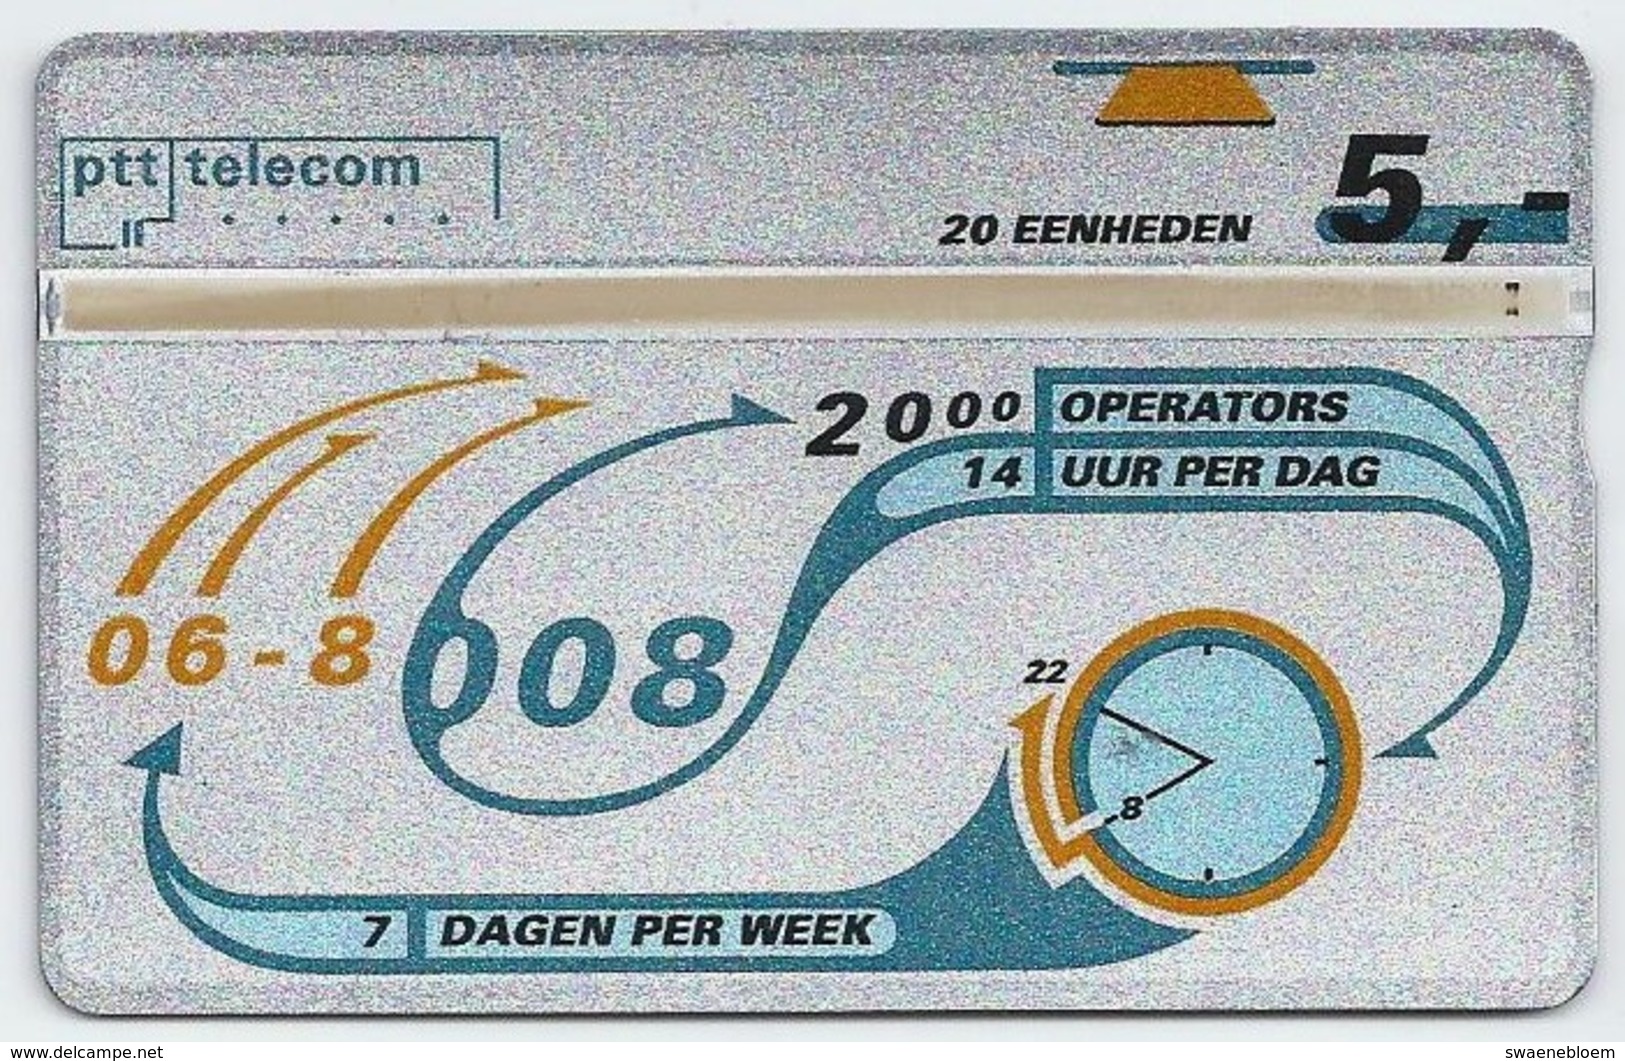 NL.- Nederland. PTT Telecom 06-8008. 7 Dagen Per Week. 14 Uur Per Dag. 20 Eenheden. KWALITEIT. 321B - Openbaar